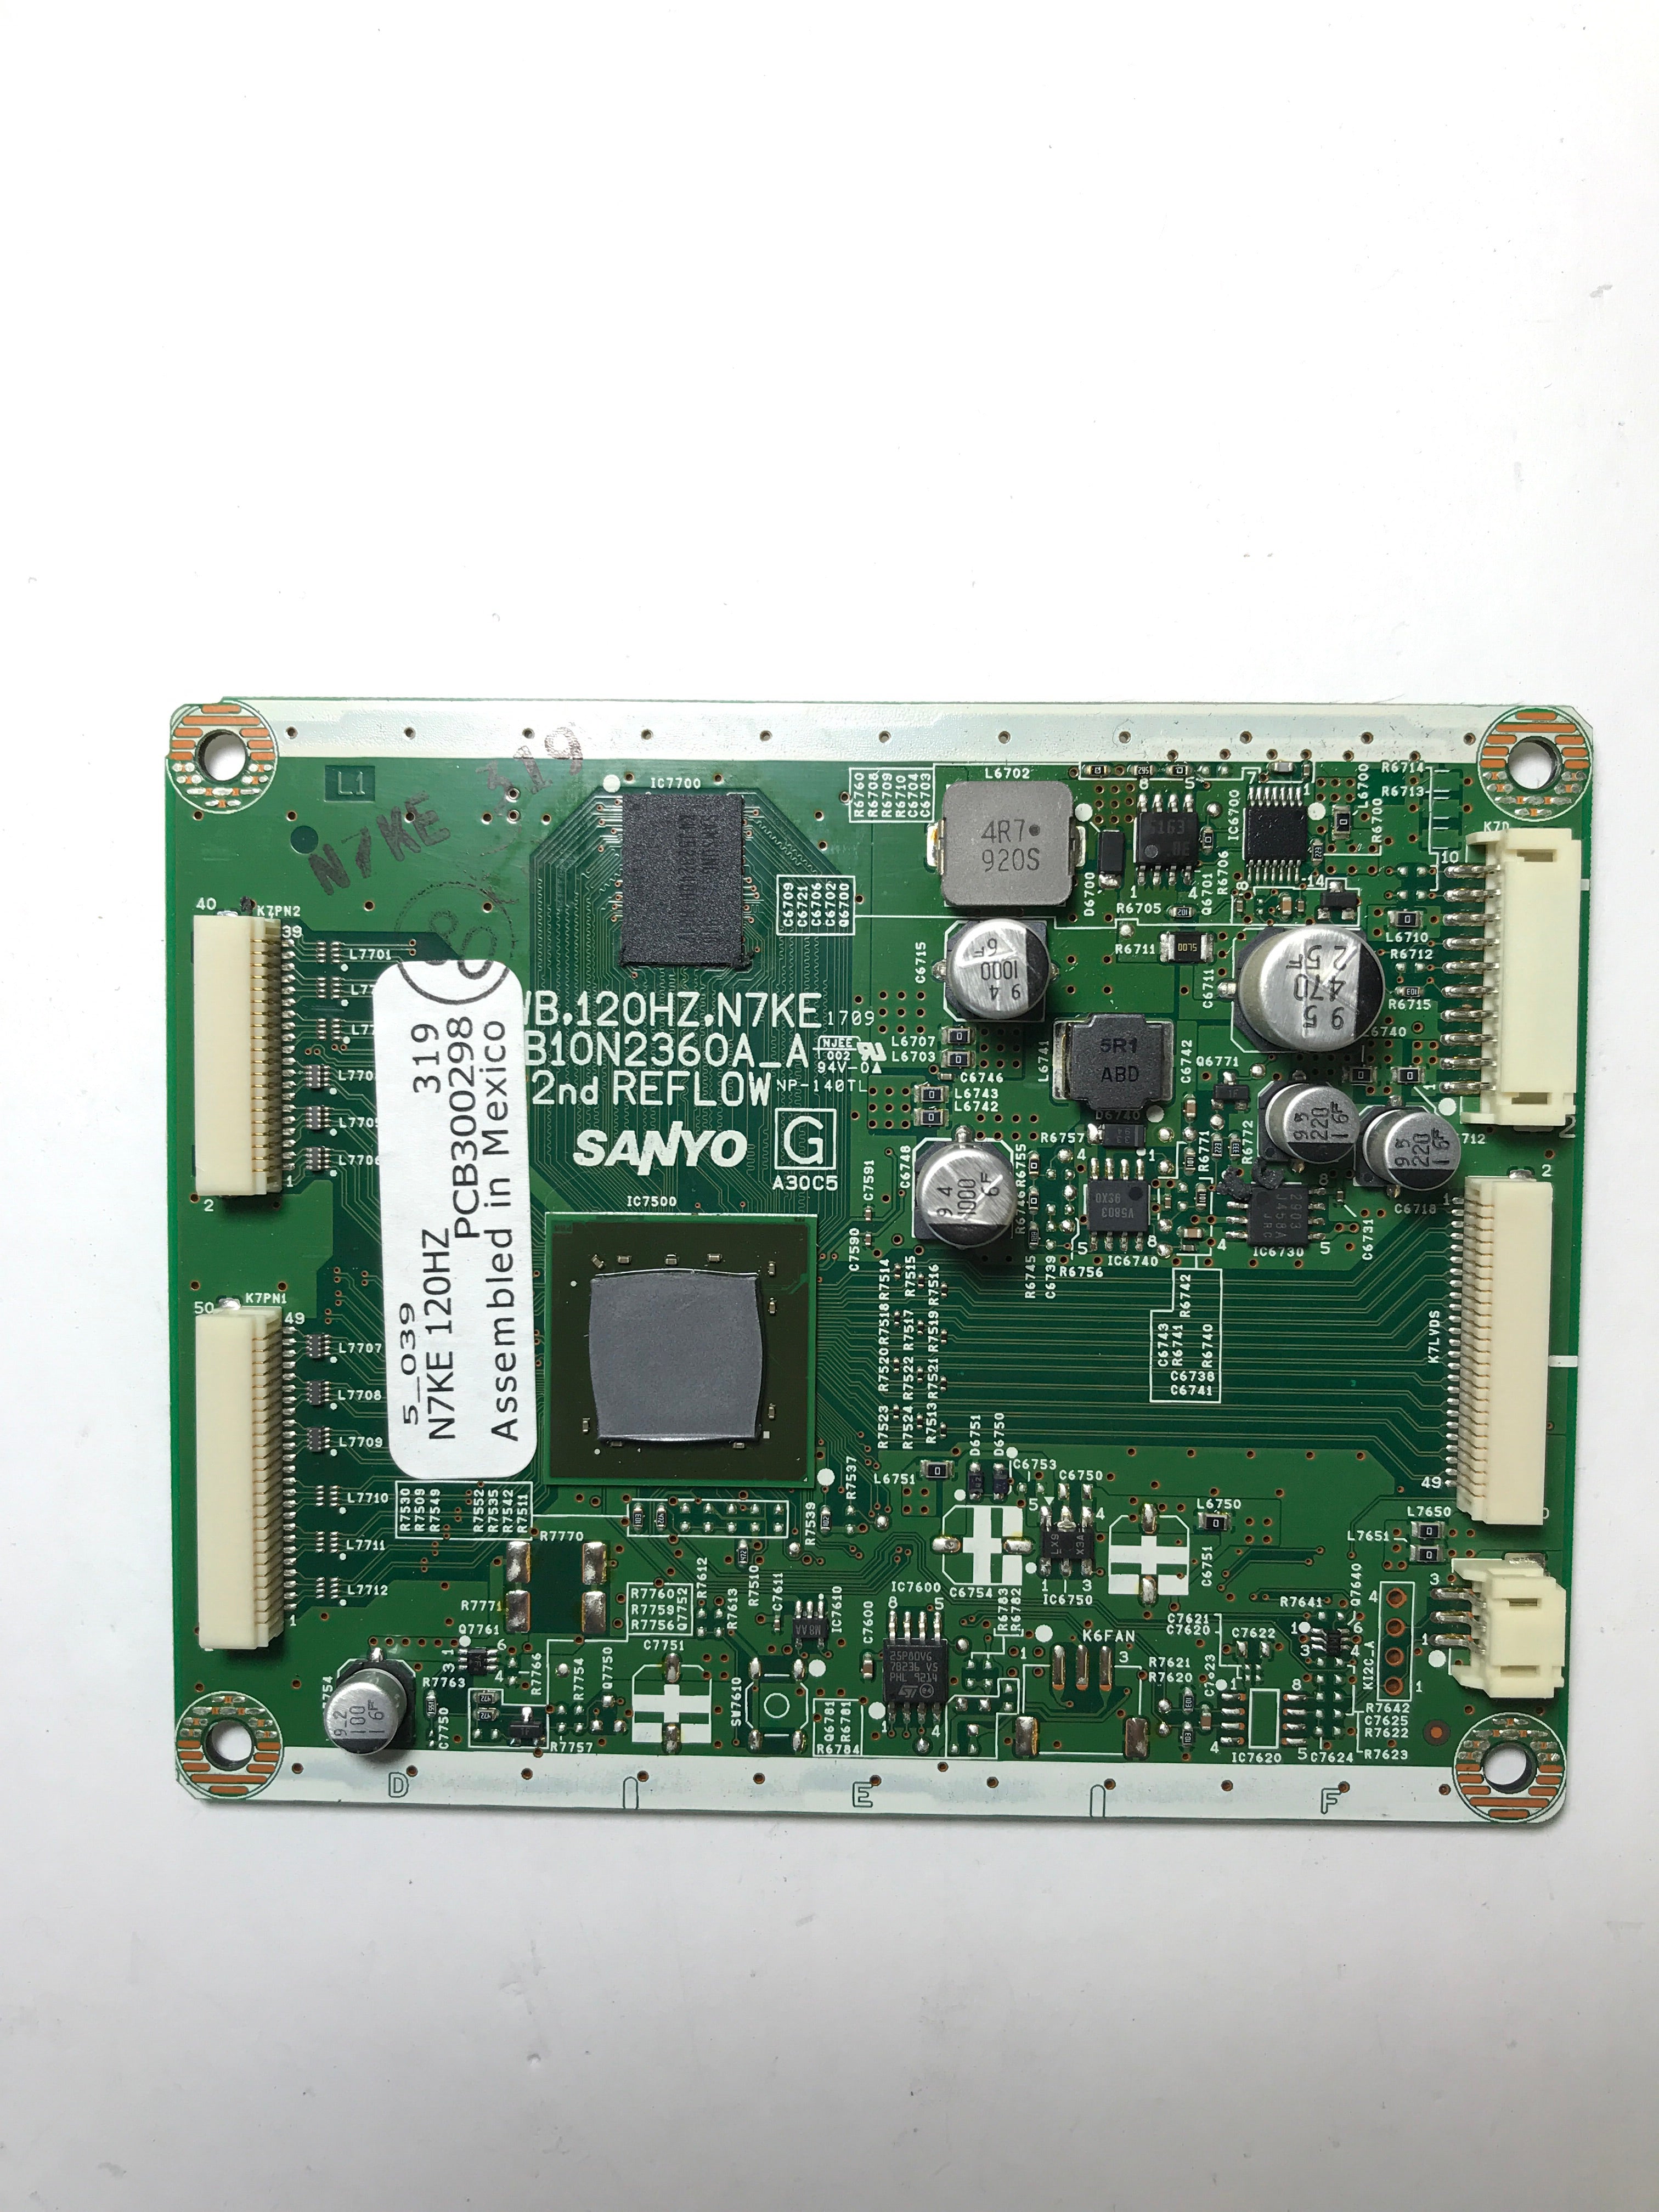 Sanyo 1AA4B10N2360A_A N7KE PC Board